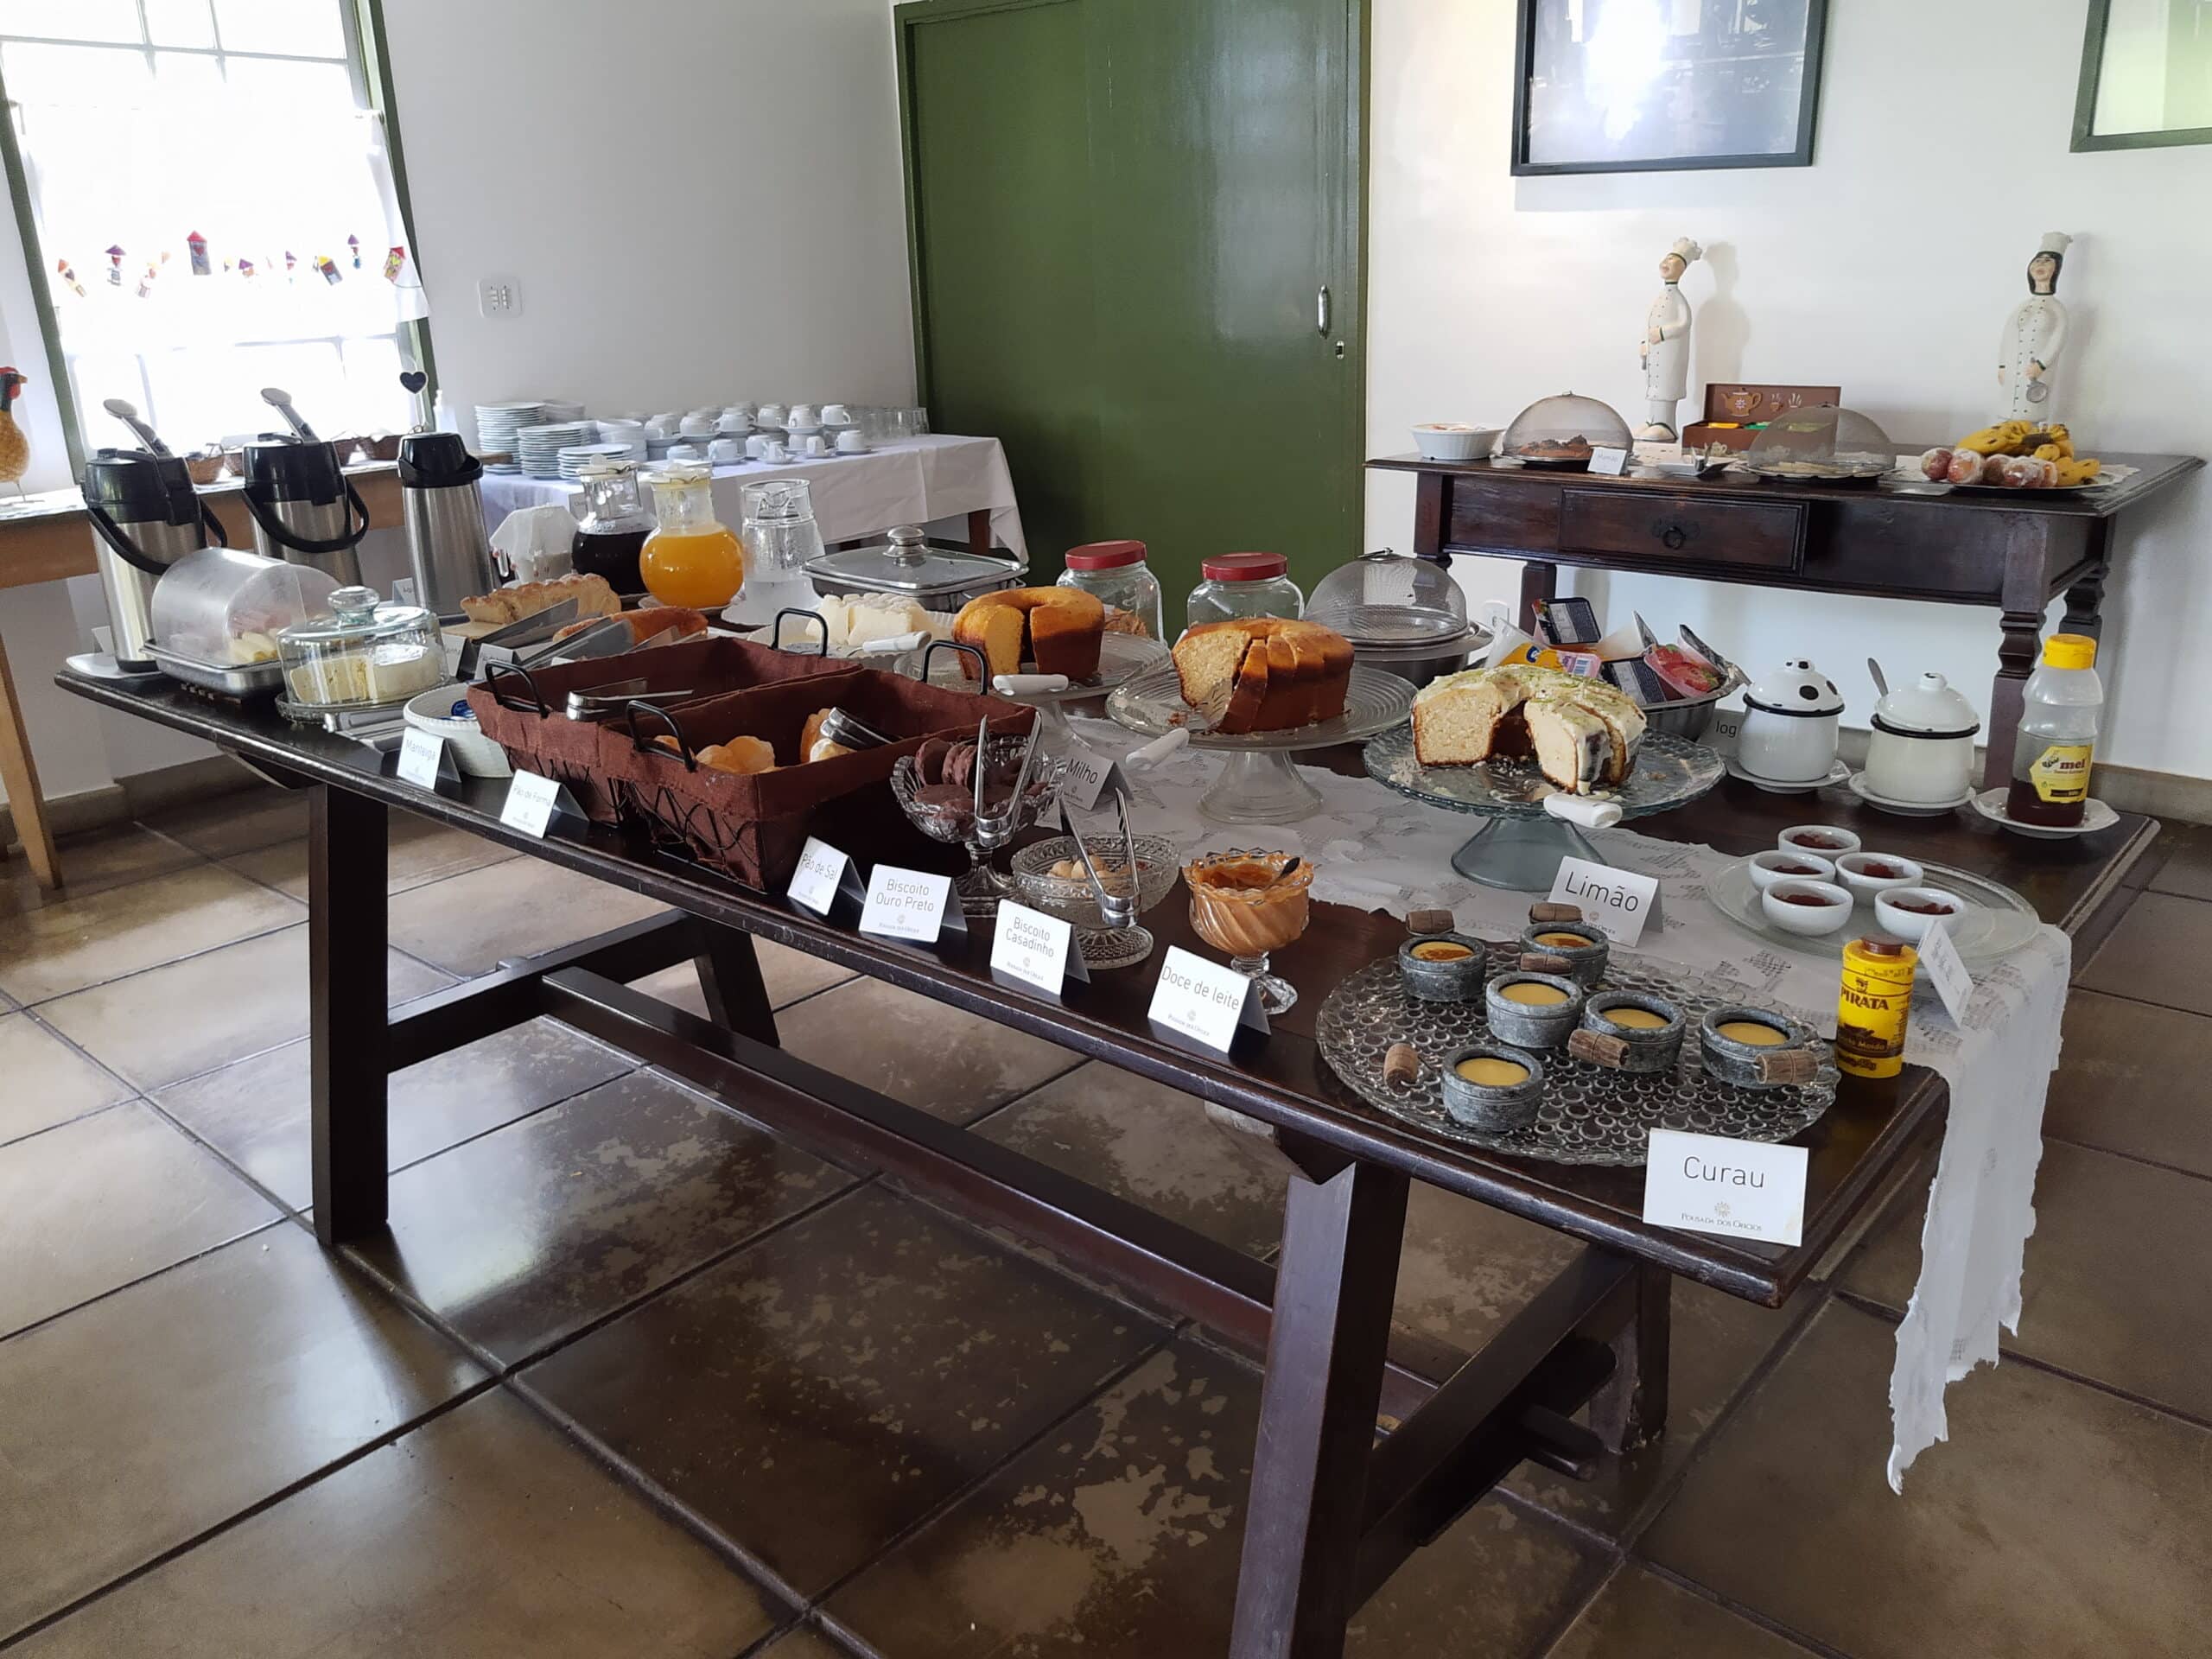 mesa farta de alimentos, como pães, bolos, cereais, bandejas de frios, sucos e ovos mexidos na área de café da manhã da pousada dos ofícios